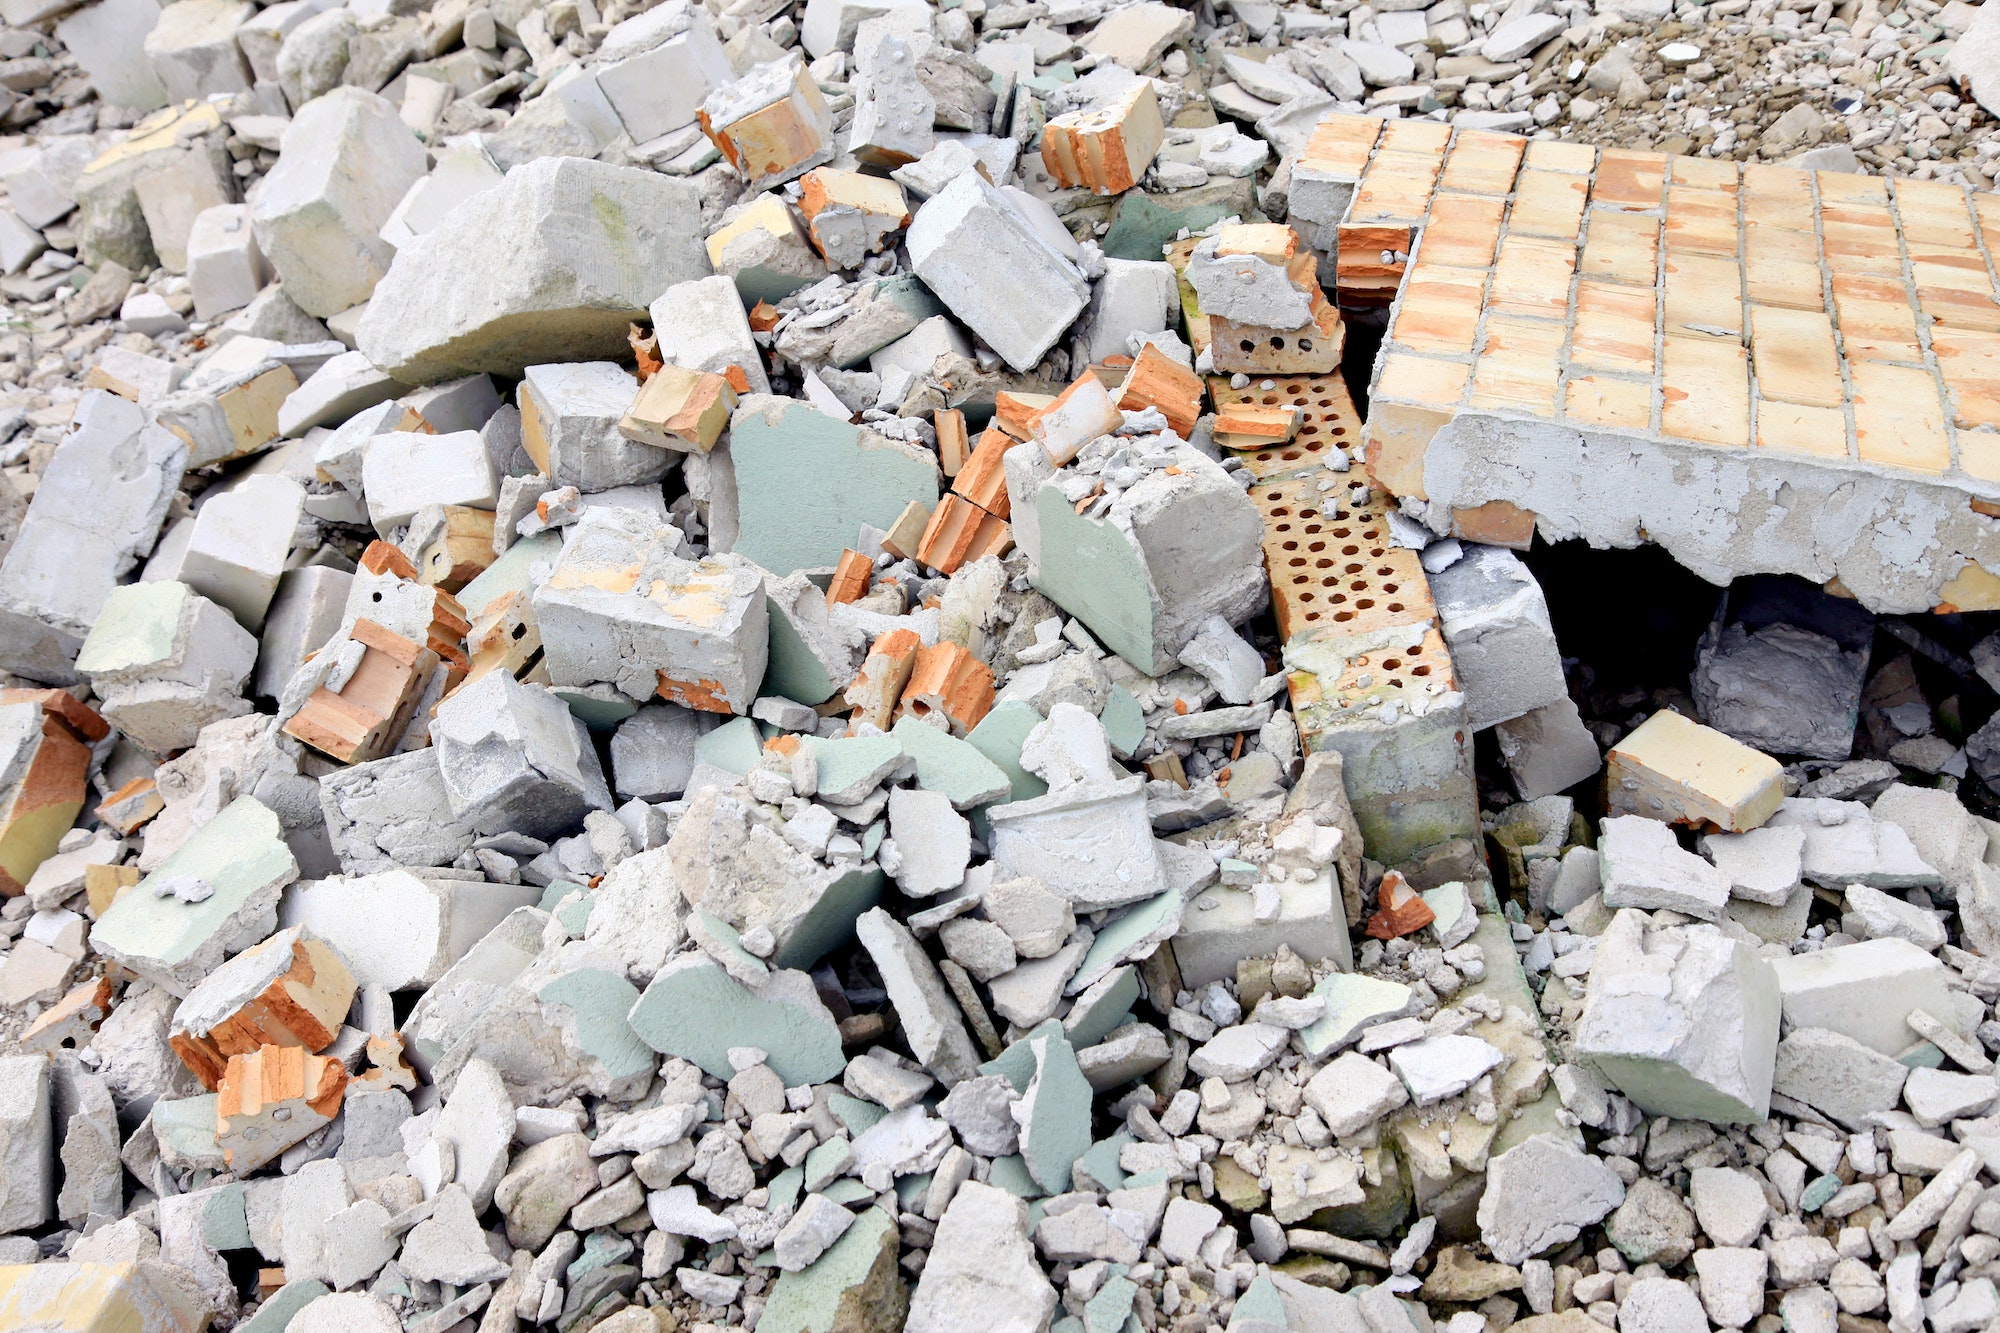 Pile of construction concrete debris, environmental background